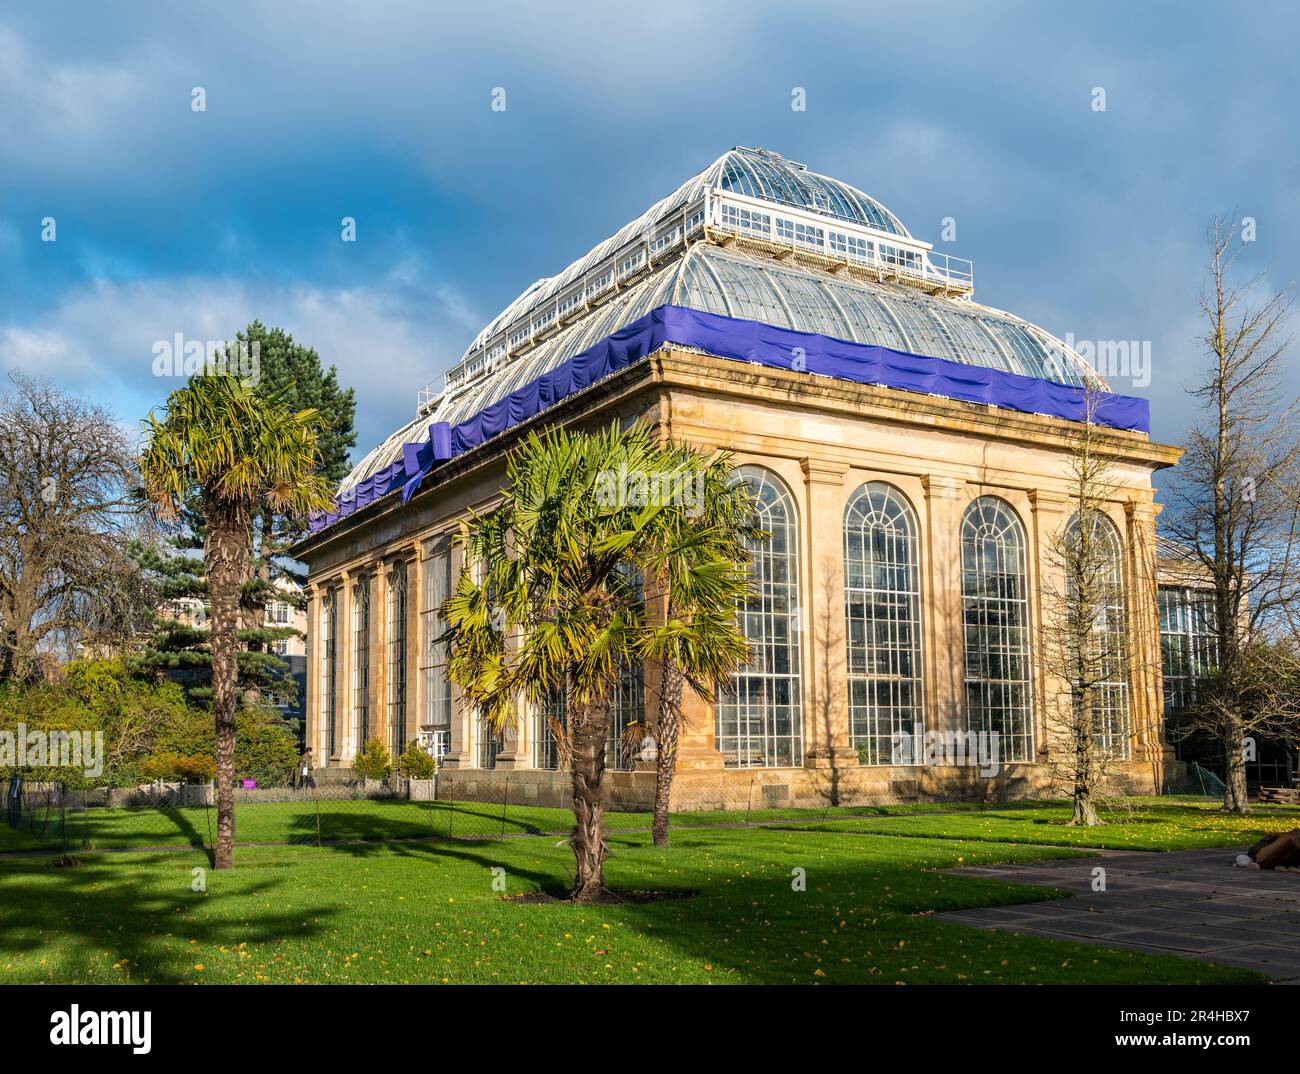 Victrian glasshouse wrapped with a bow for celebration, Roayl Botanic Gardens, Edinburgh, Scotland, UK Stock Photo